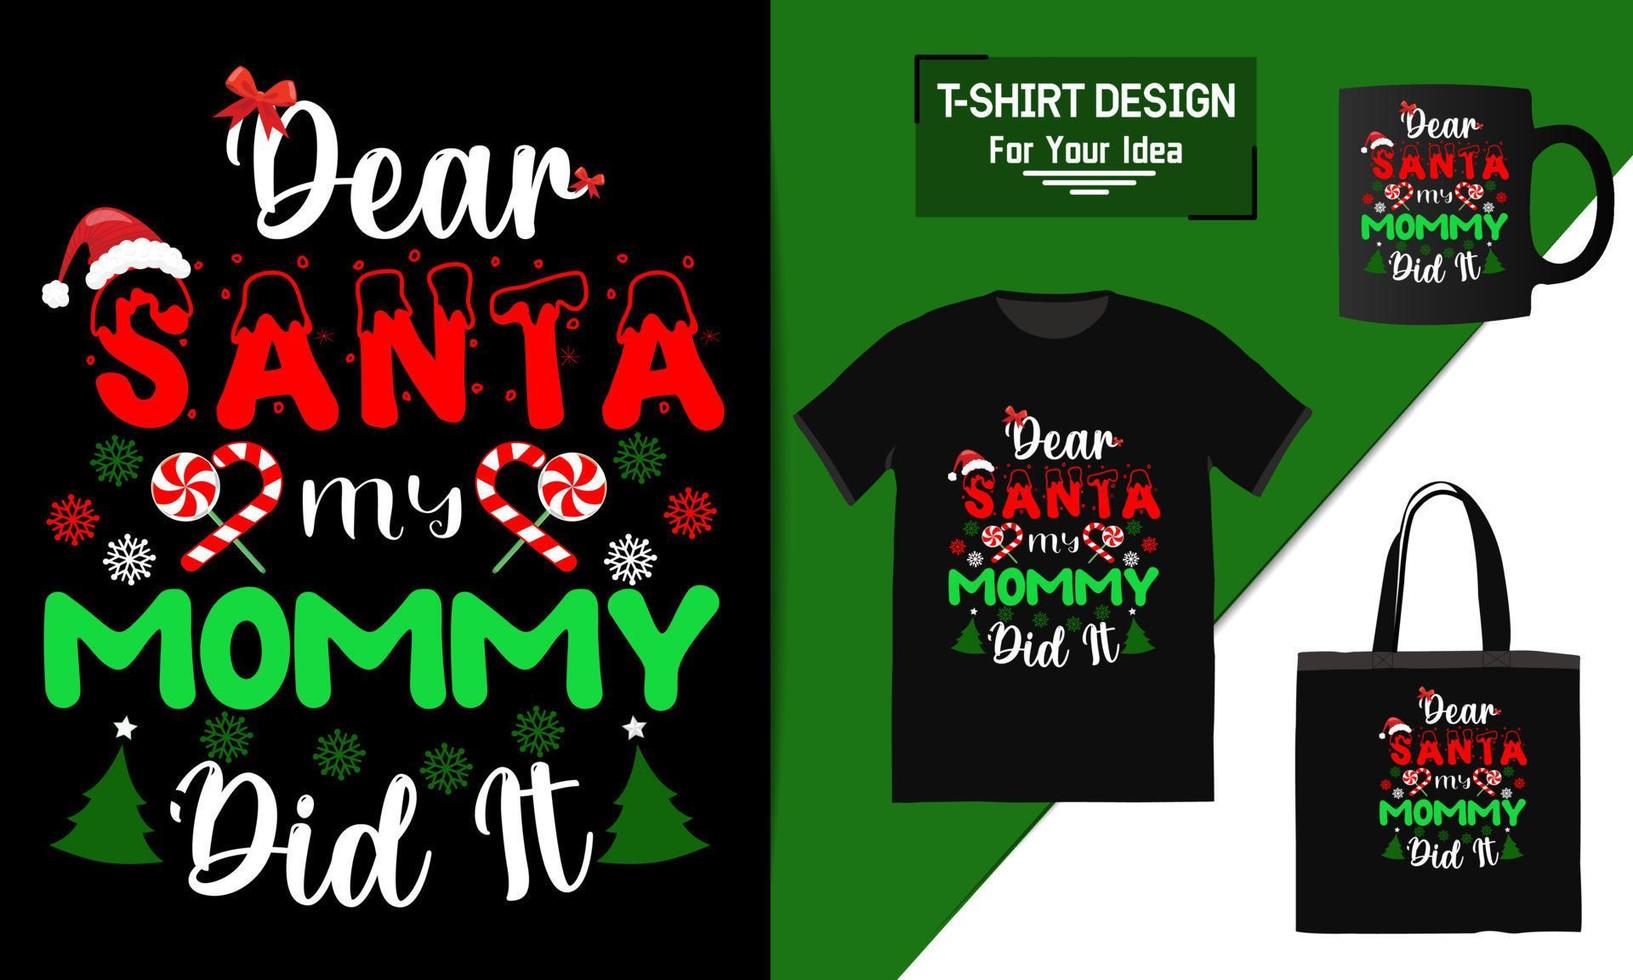 kära jultomte min mamma gjorde det bokstäver citat, jul t-shirt design, typografi vektor en mugg och rolig jul redo för tryck